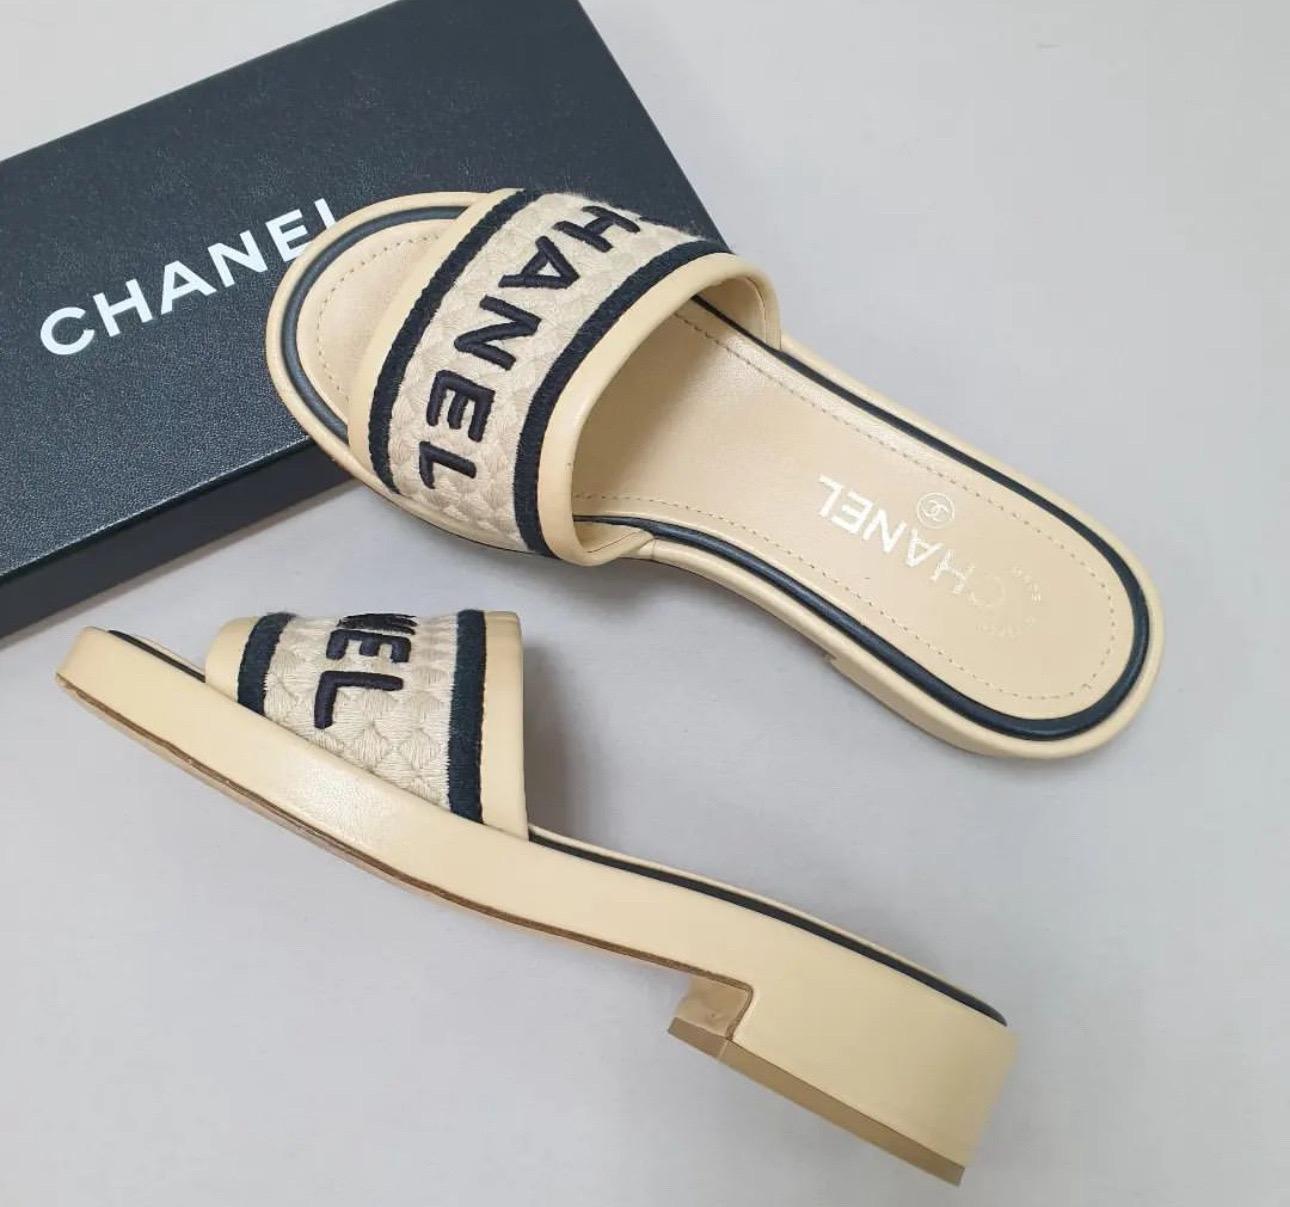     Chanel Leder Pantoletten
    Aus der Collection'S 2021 von Virginie Viard
    Weiß
    Interlocking CC Logo
    Gestickter Akzent



Sehr guter Zustand.
Gebrauchsspuren auf den Bildern zu sehen.
Sz. 37
Keine Box. Kein Staubbeutel